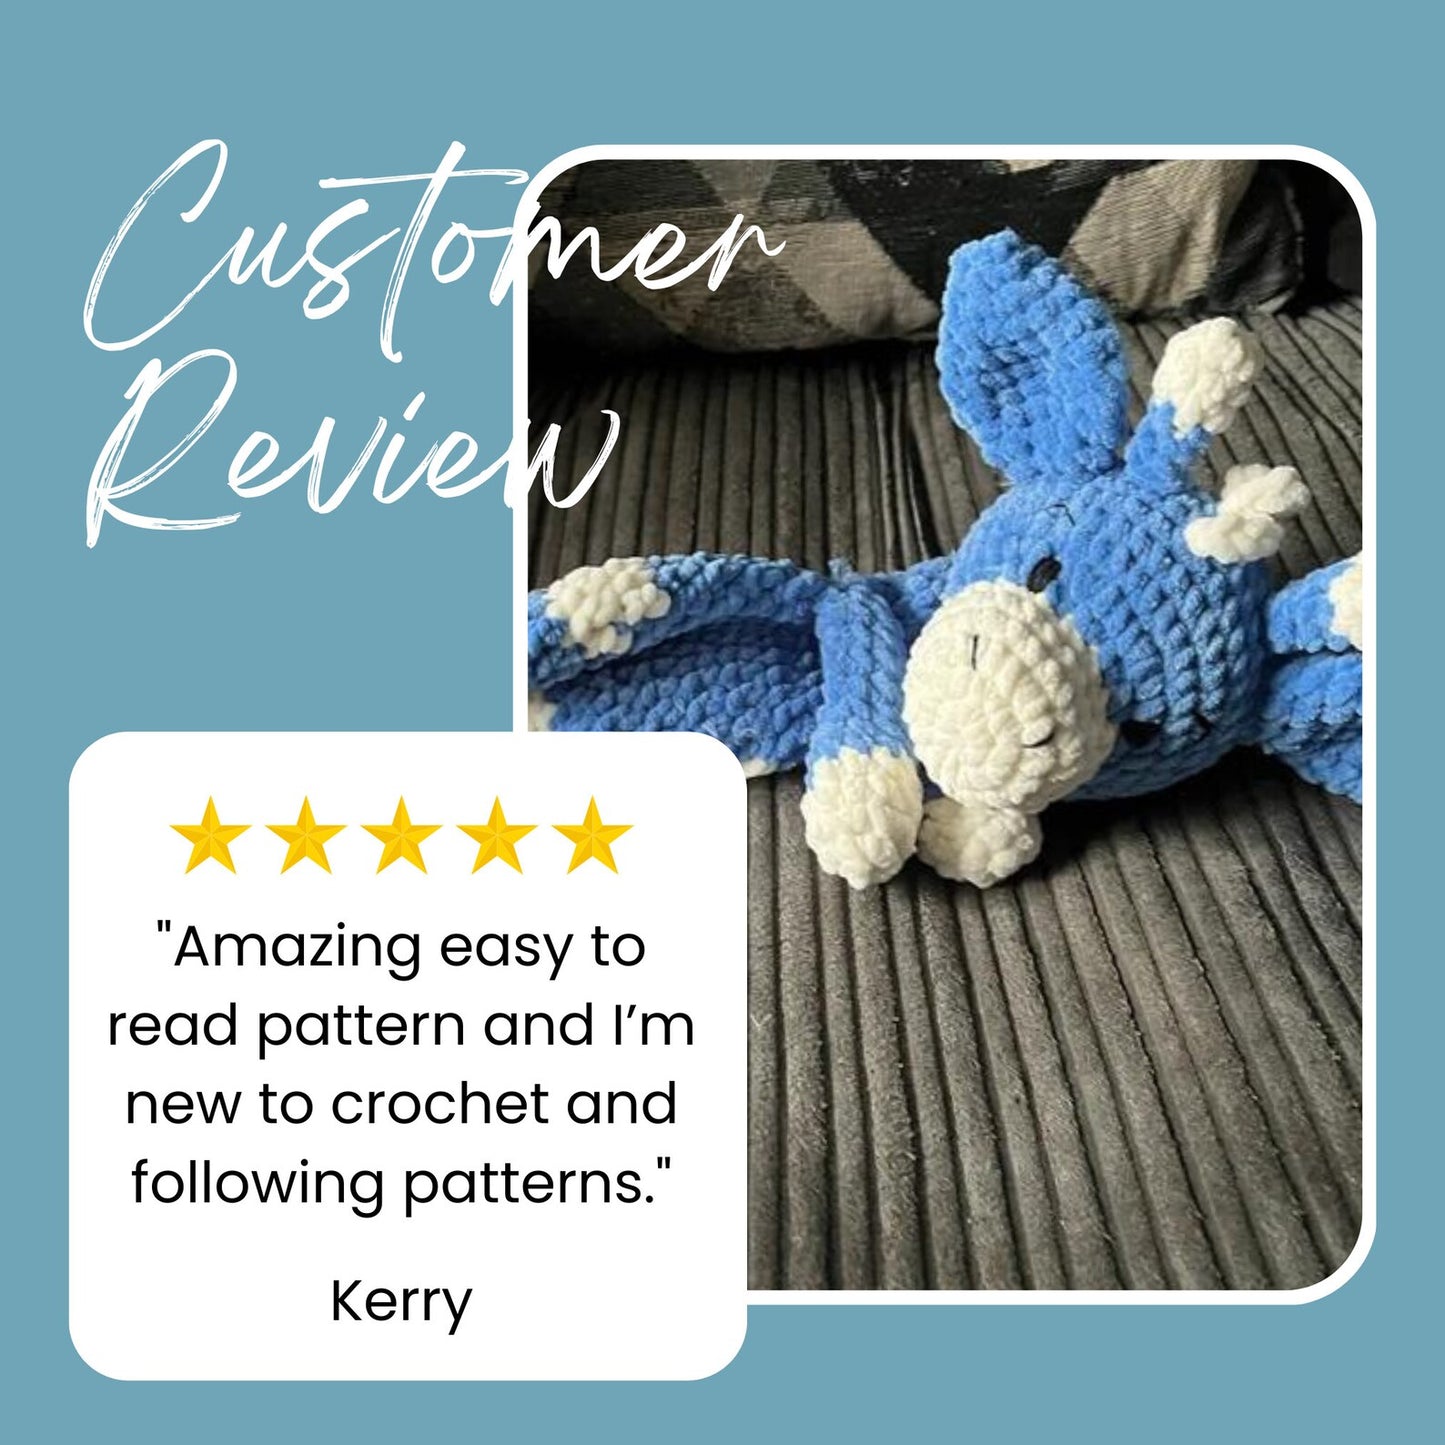 Giraffe Snuggler Crochet 5 star review